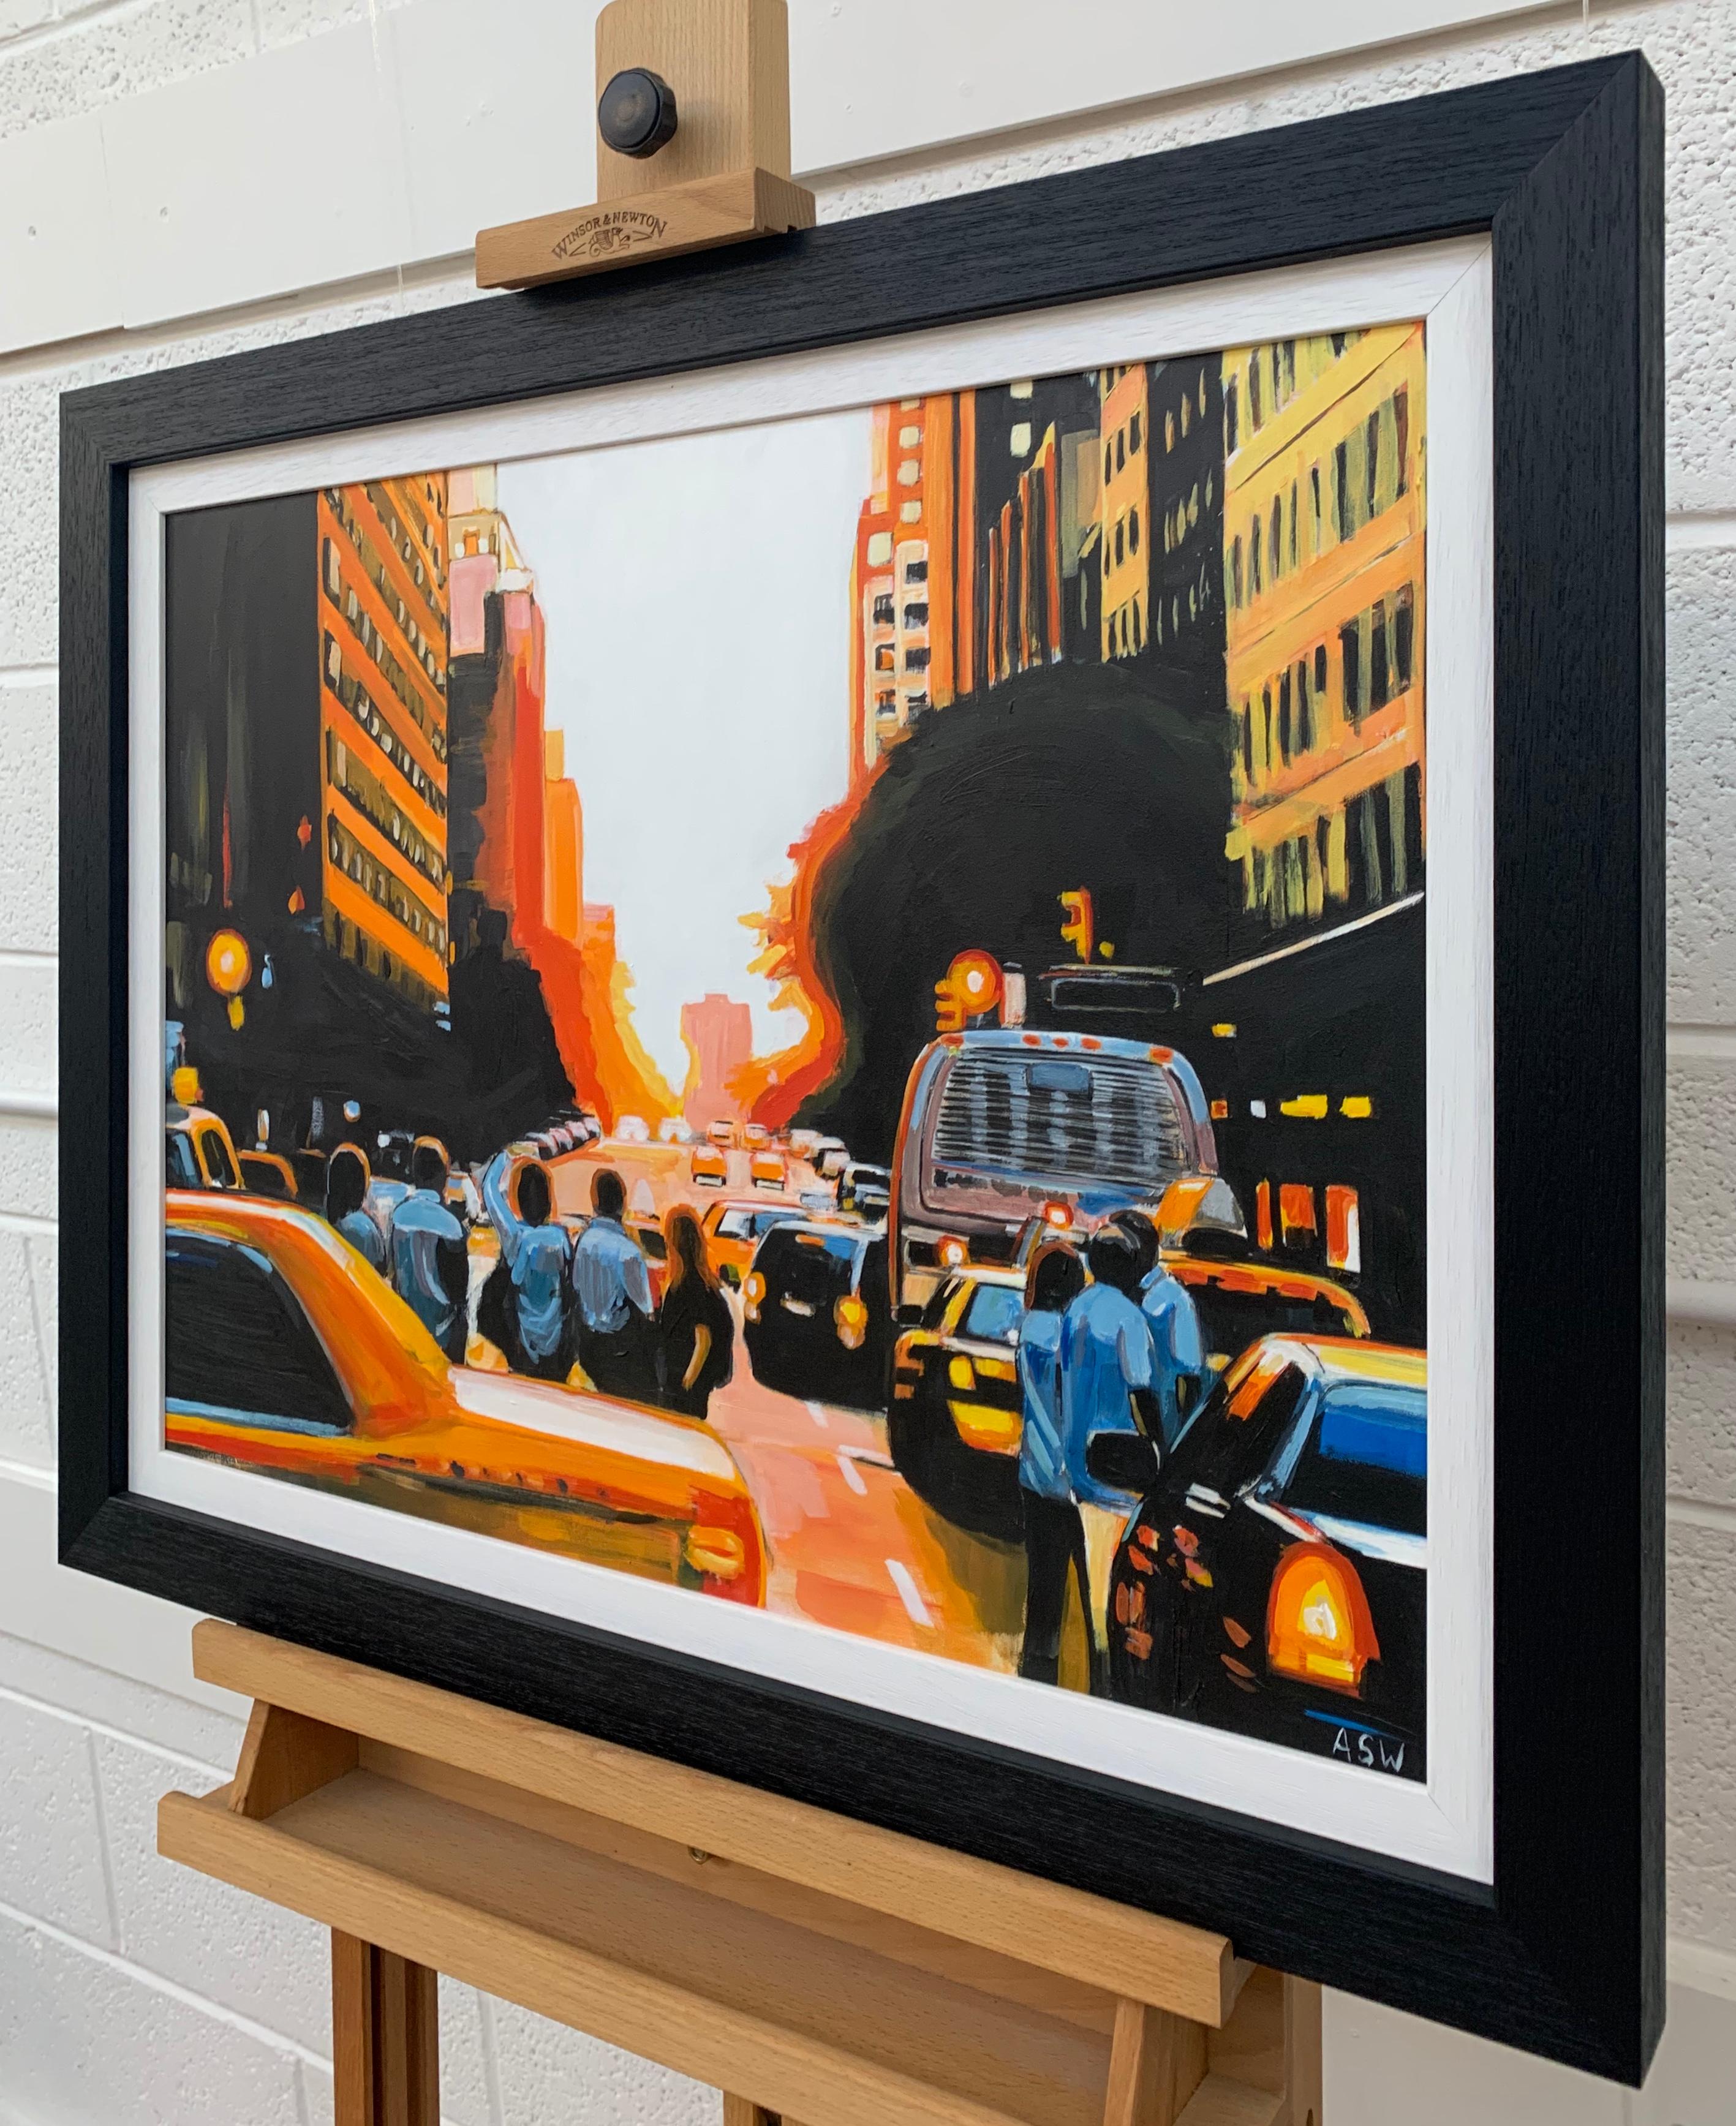 Peinture figurative de personnes admirant le Manhattan Henge Sunset New York City NYC avec une lumière et des couleurs dramatiques par Angela Wakefield, artiste urbaine britannique de premier plan. 

L'œuvre d'art mesure 24 x 18 pouces
Le cadre